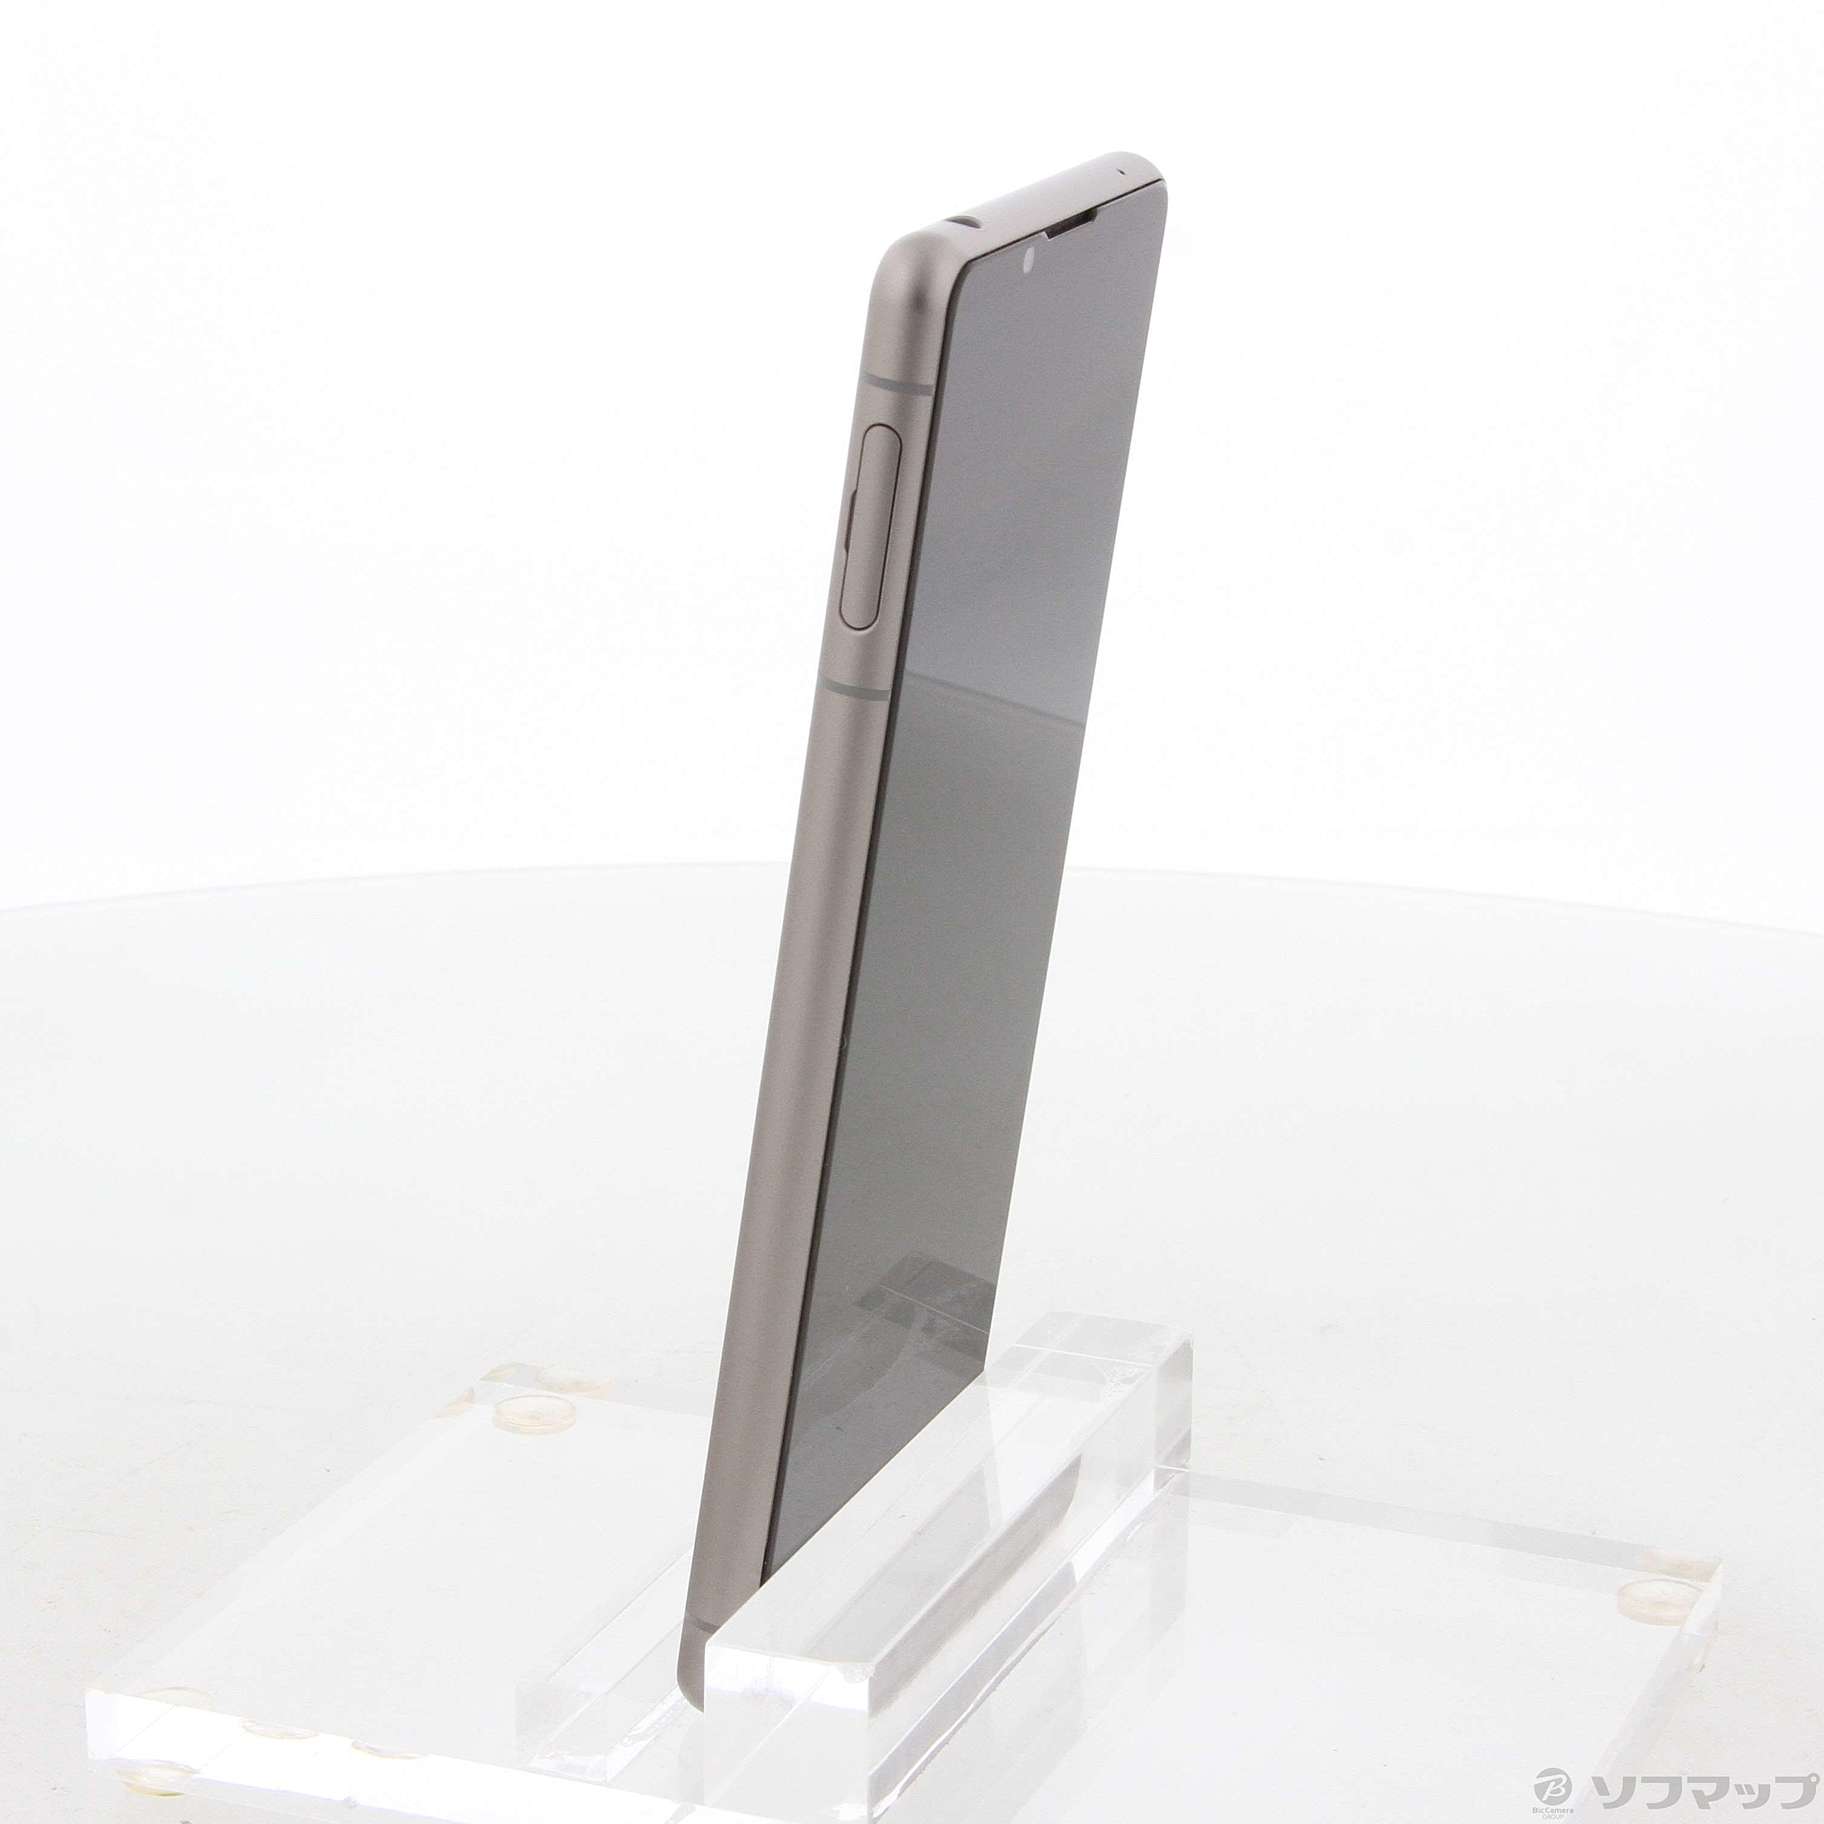 Xperia 5 IIIフロストシルバー128GB Softbank【ほぼ新品】